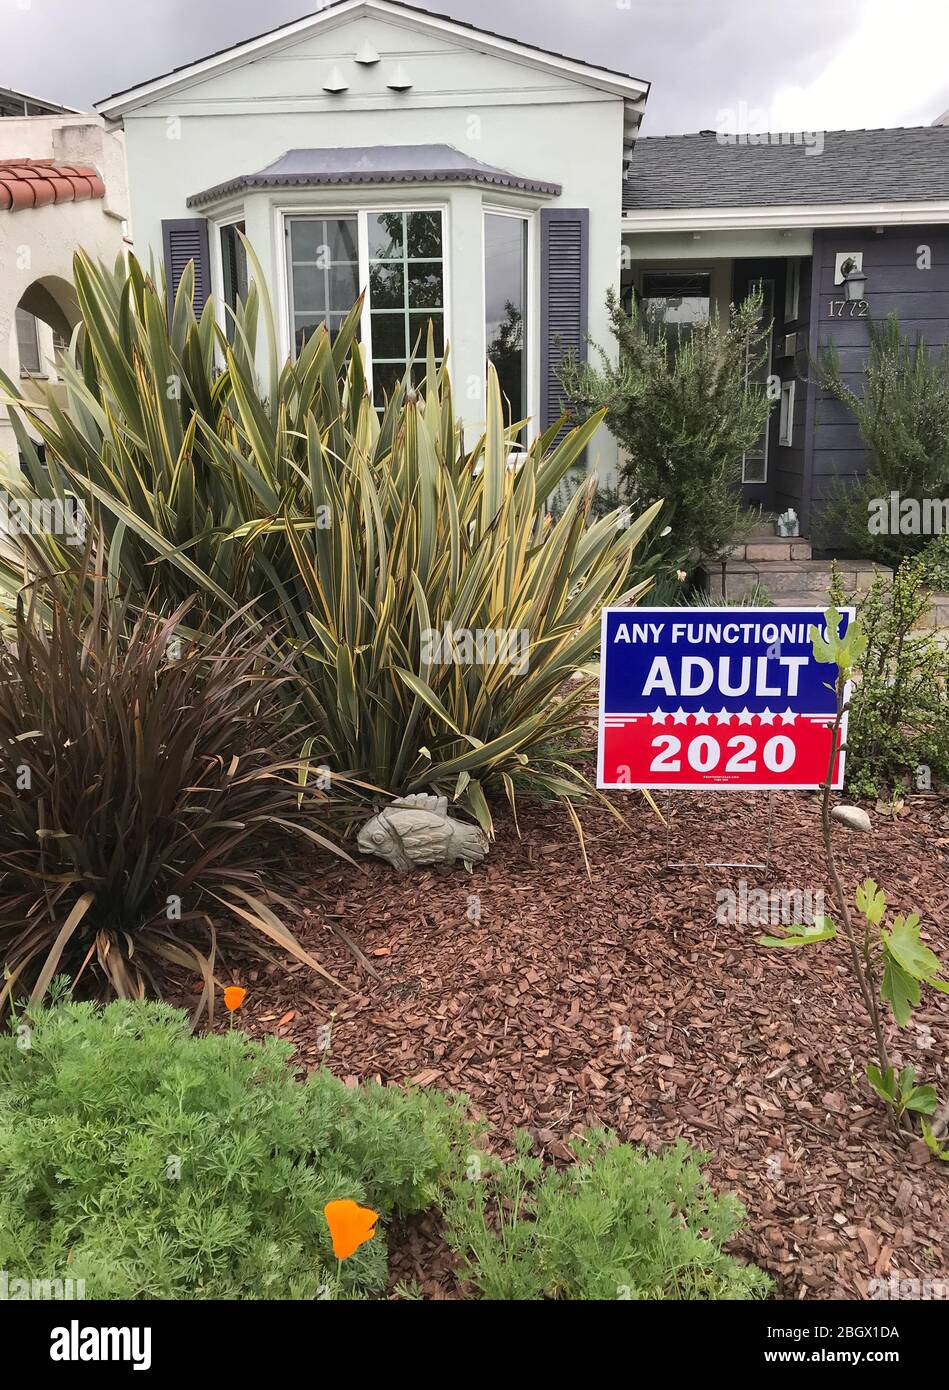 Humorvolles politisches Zeichen vor dem Haus, das "jeden funktionierenden Erwachsenen" bei den Wahlen 2020 in den USA unterstützt. Stockfoto